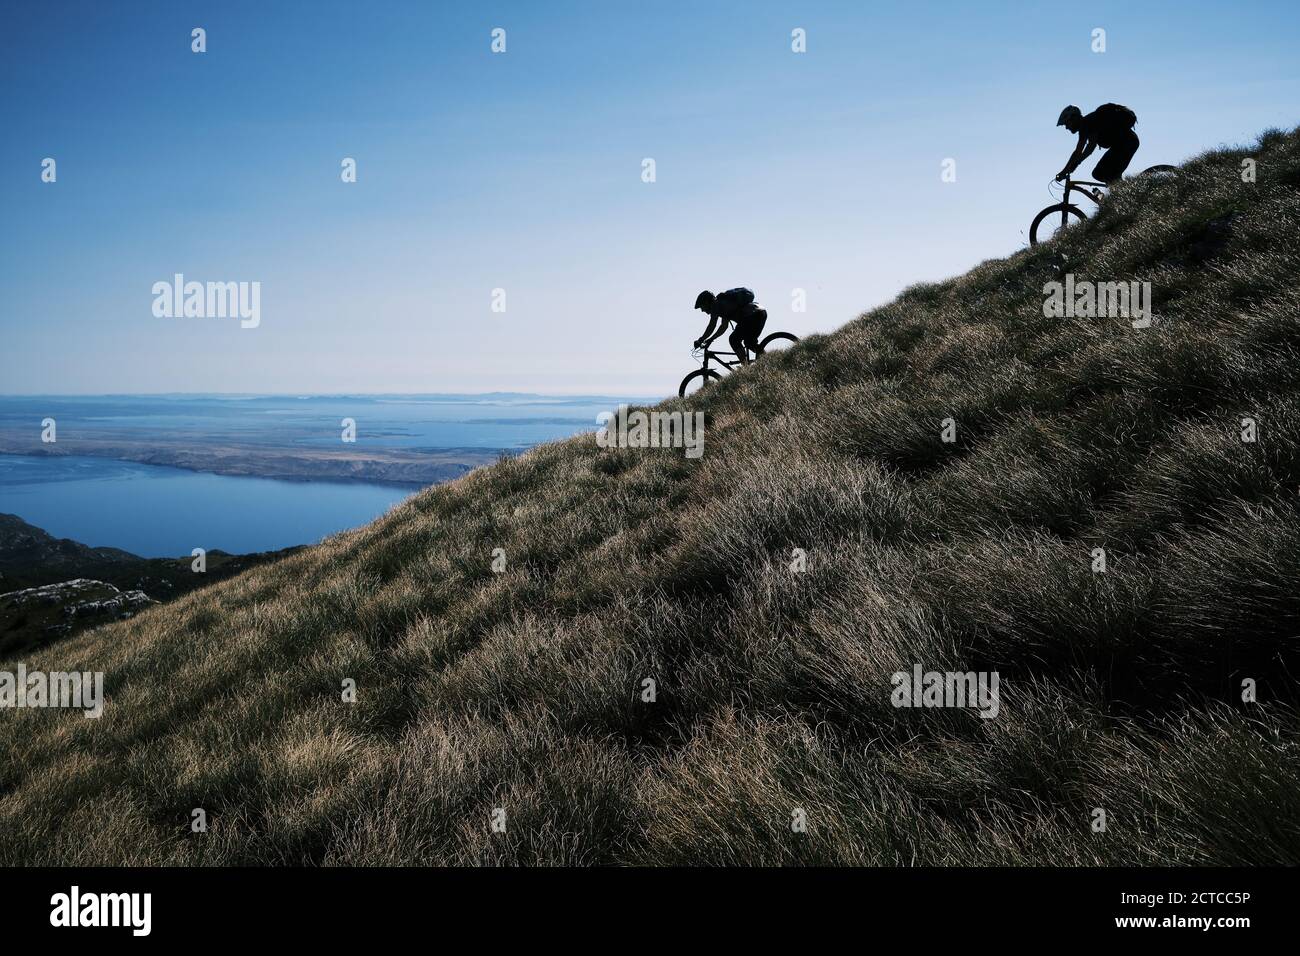 Mountain biking in Croatia Stock Photo